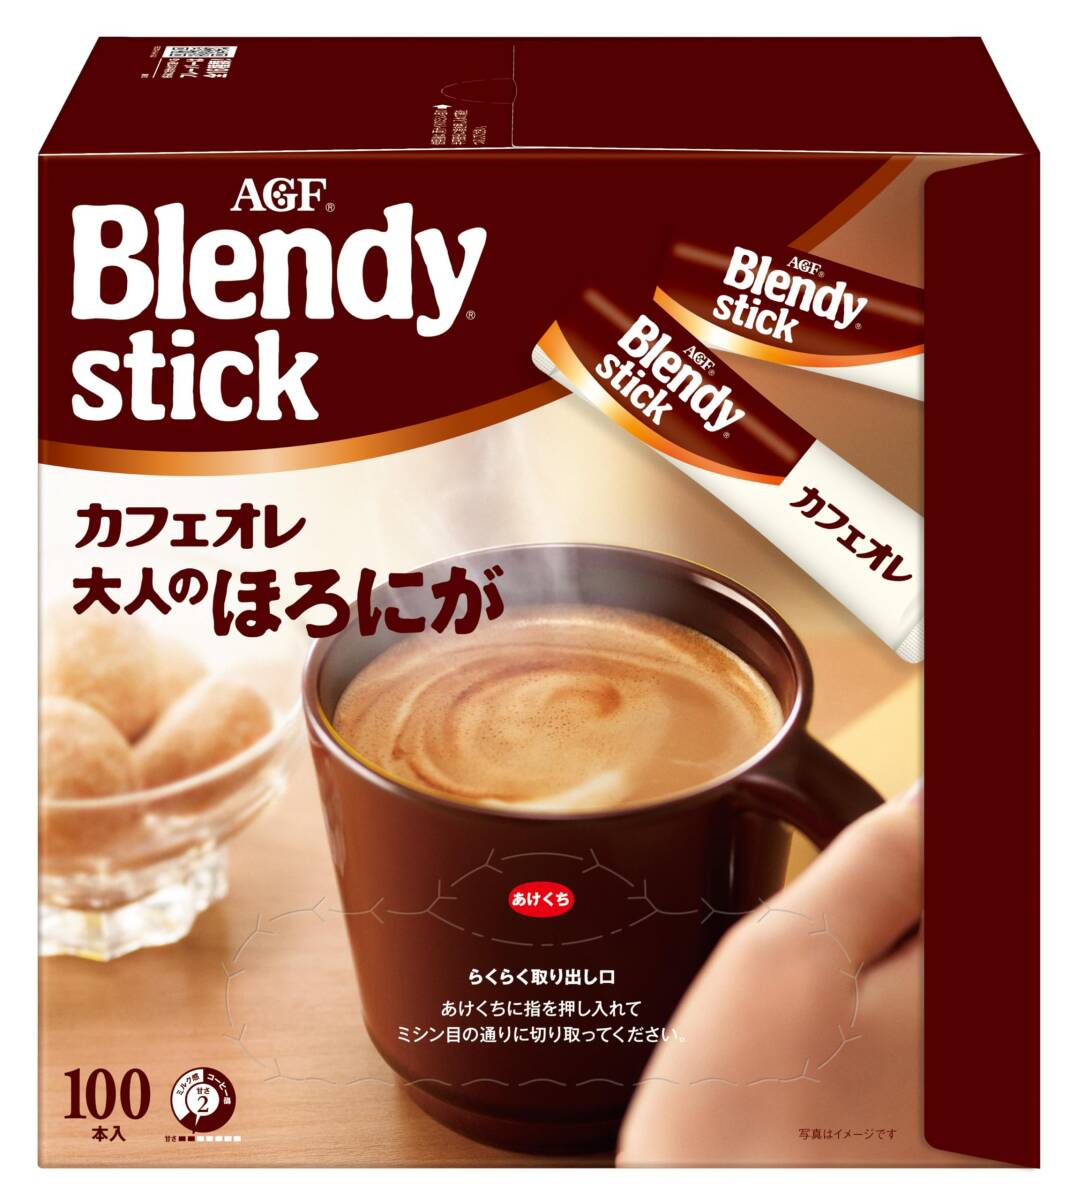 AGFb Len ti палочка кофе с молоком взрослый ....100шт.@[ палочка кофе ]